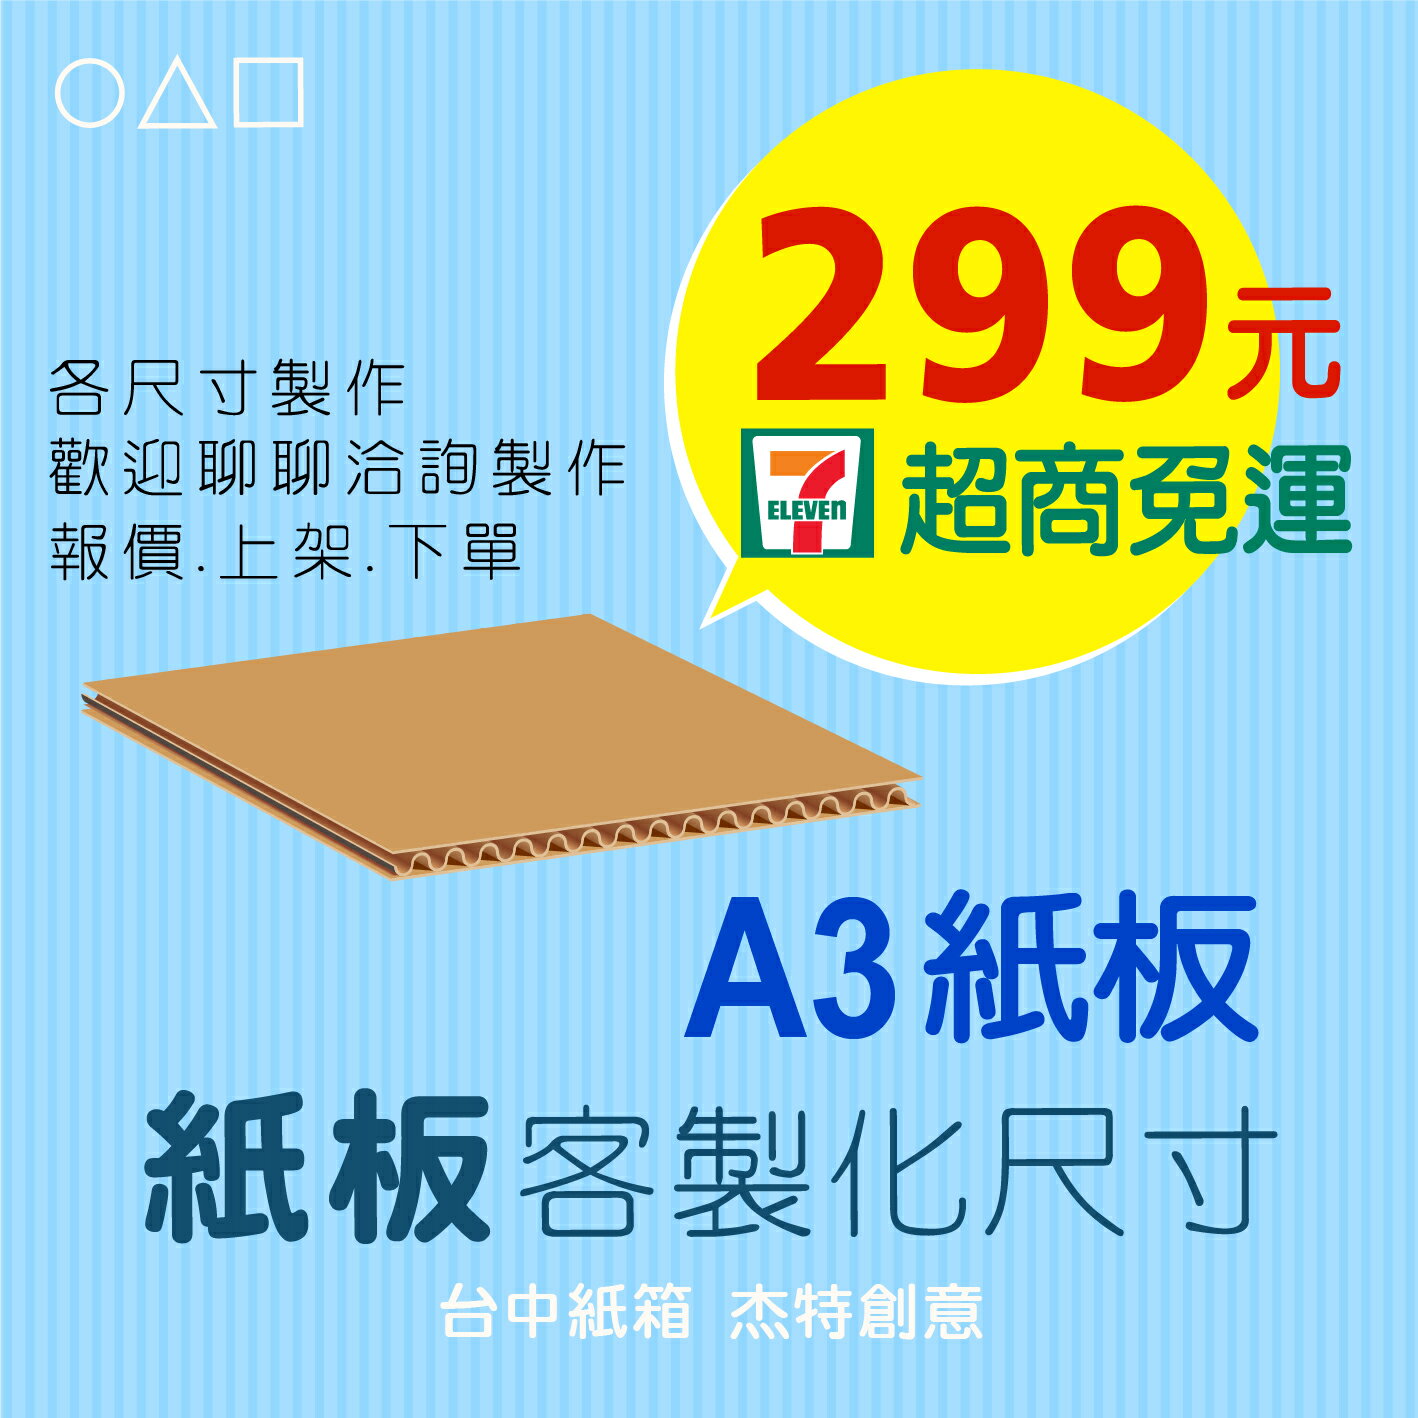 A3紙板、紙板多尺寸選擇、紙板、紙箱、包裝紙版、訂製、訂做、瓦楞紙板、隔板、台中紙箱